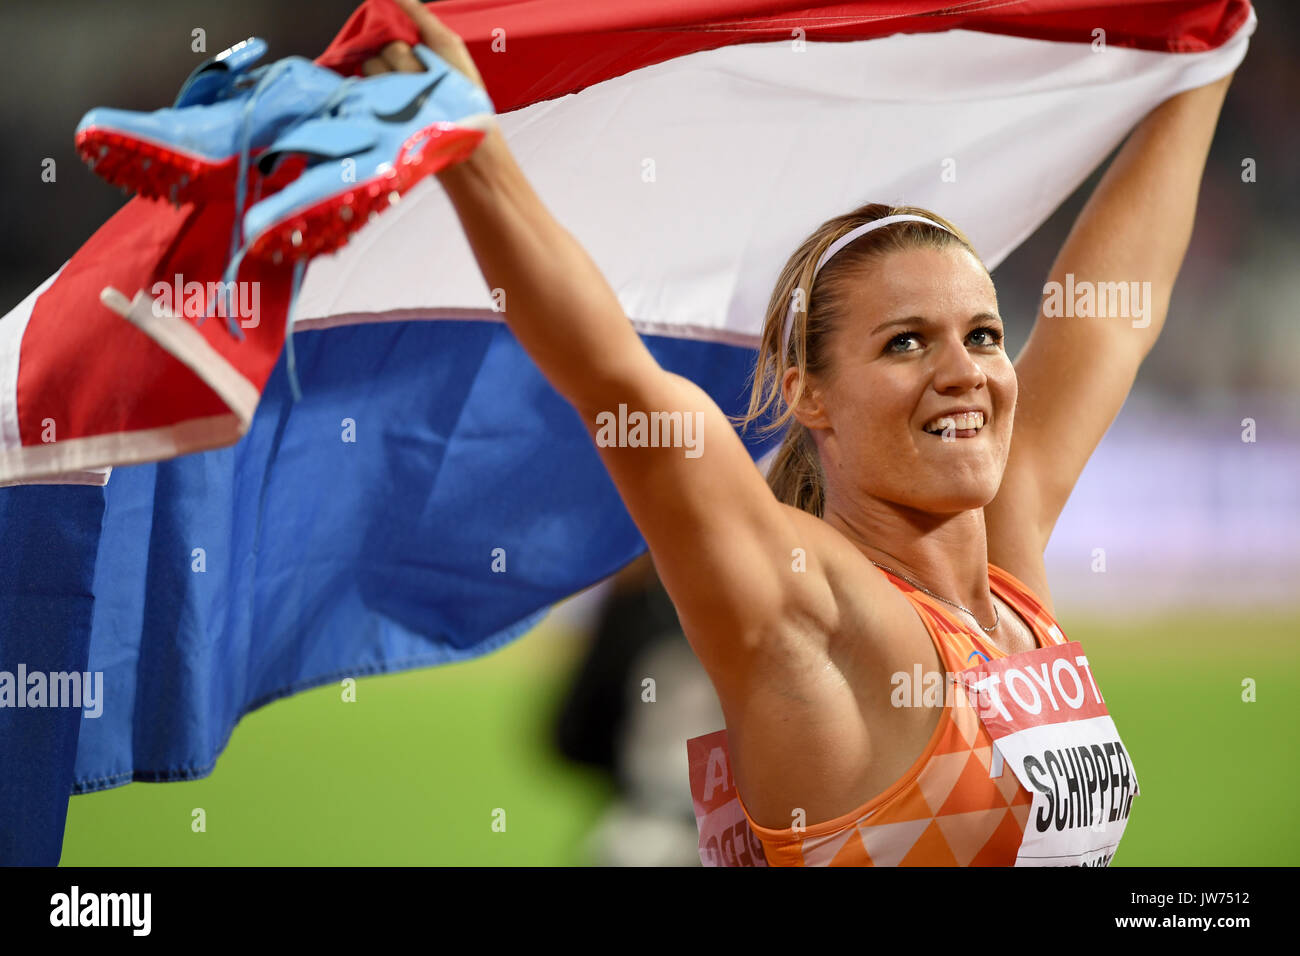 Londres, Royaume-Uni. Août 11, 2017. Dafne Schippers a conservé son titre du 200 m aux Championnats du monde, à Londres Crédit : Mariano Garcia/Alamy Live News Banque D'Images